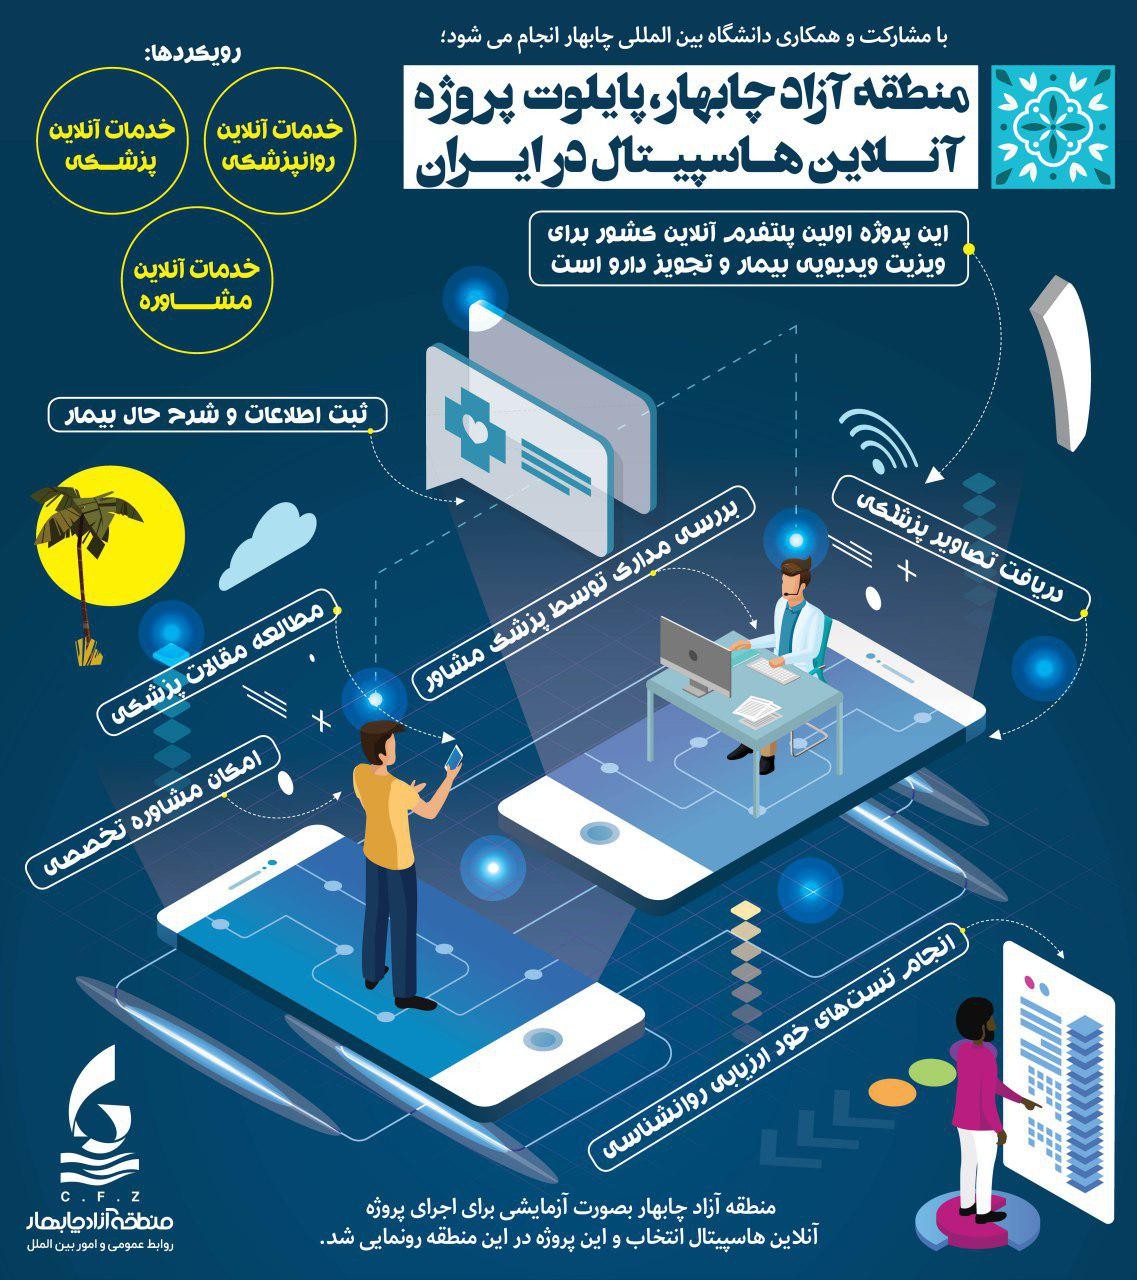 منطقه آزاد چابهار پایلوت پروژه آنلاین هاسپیتال در ایران 